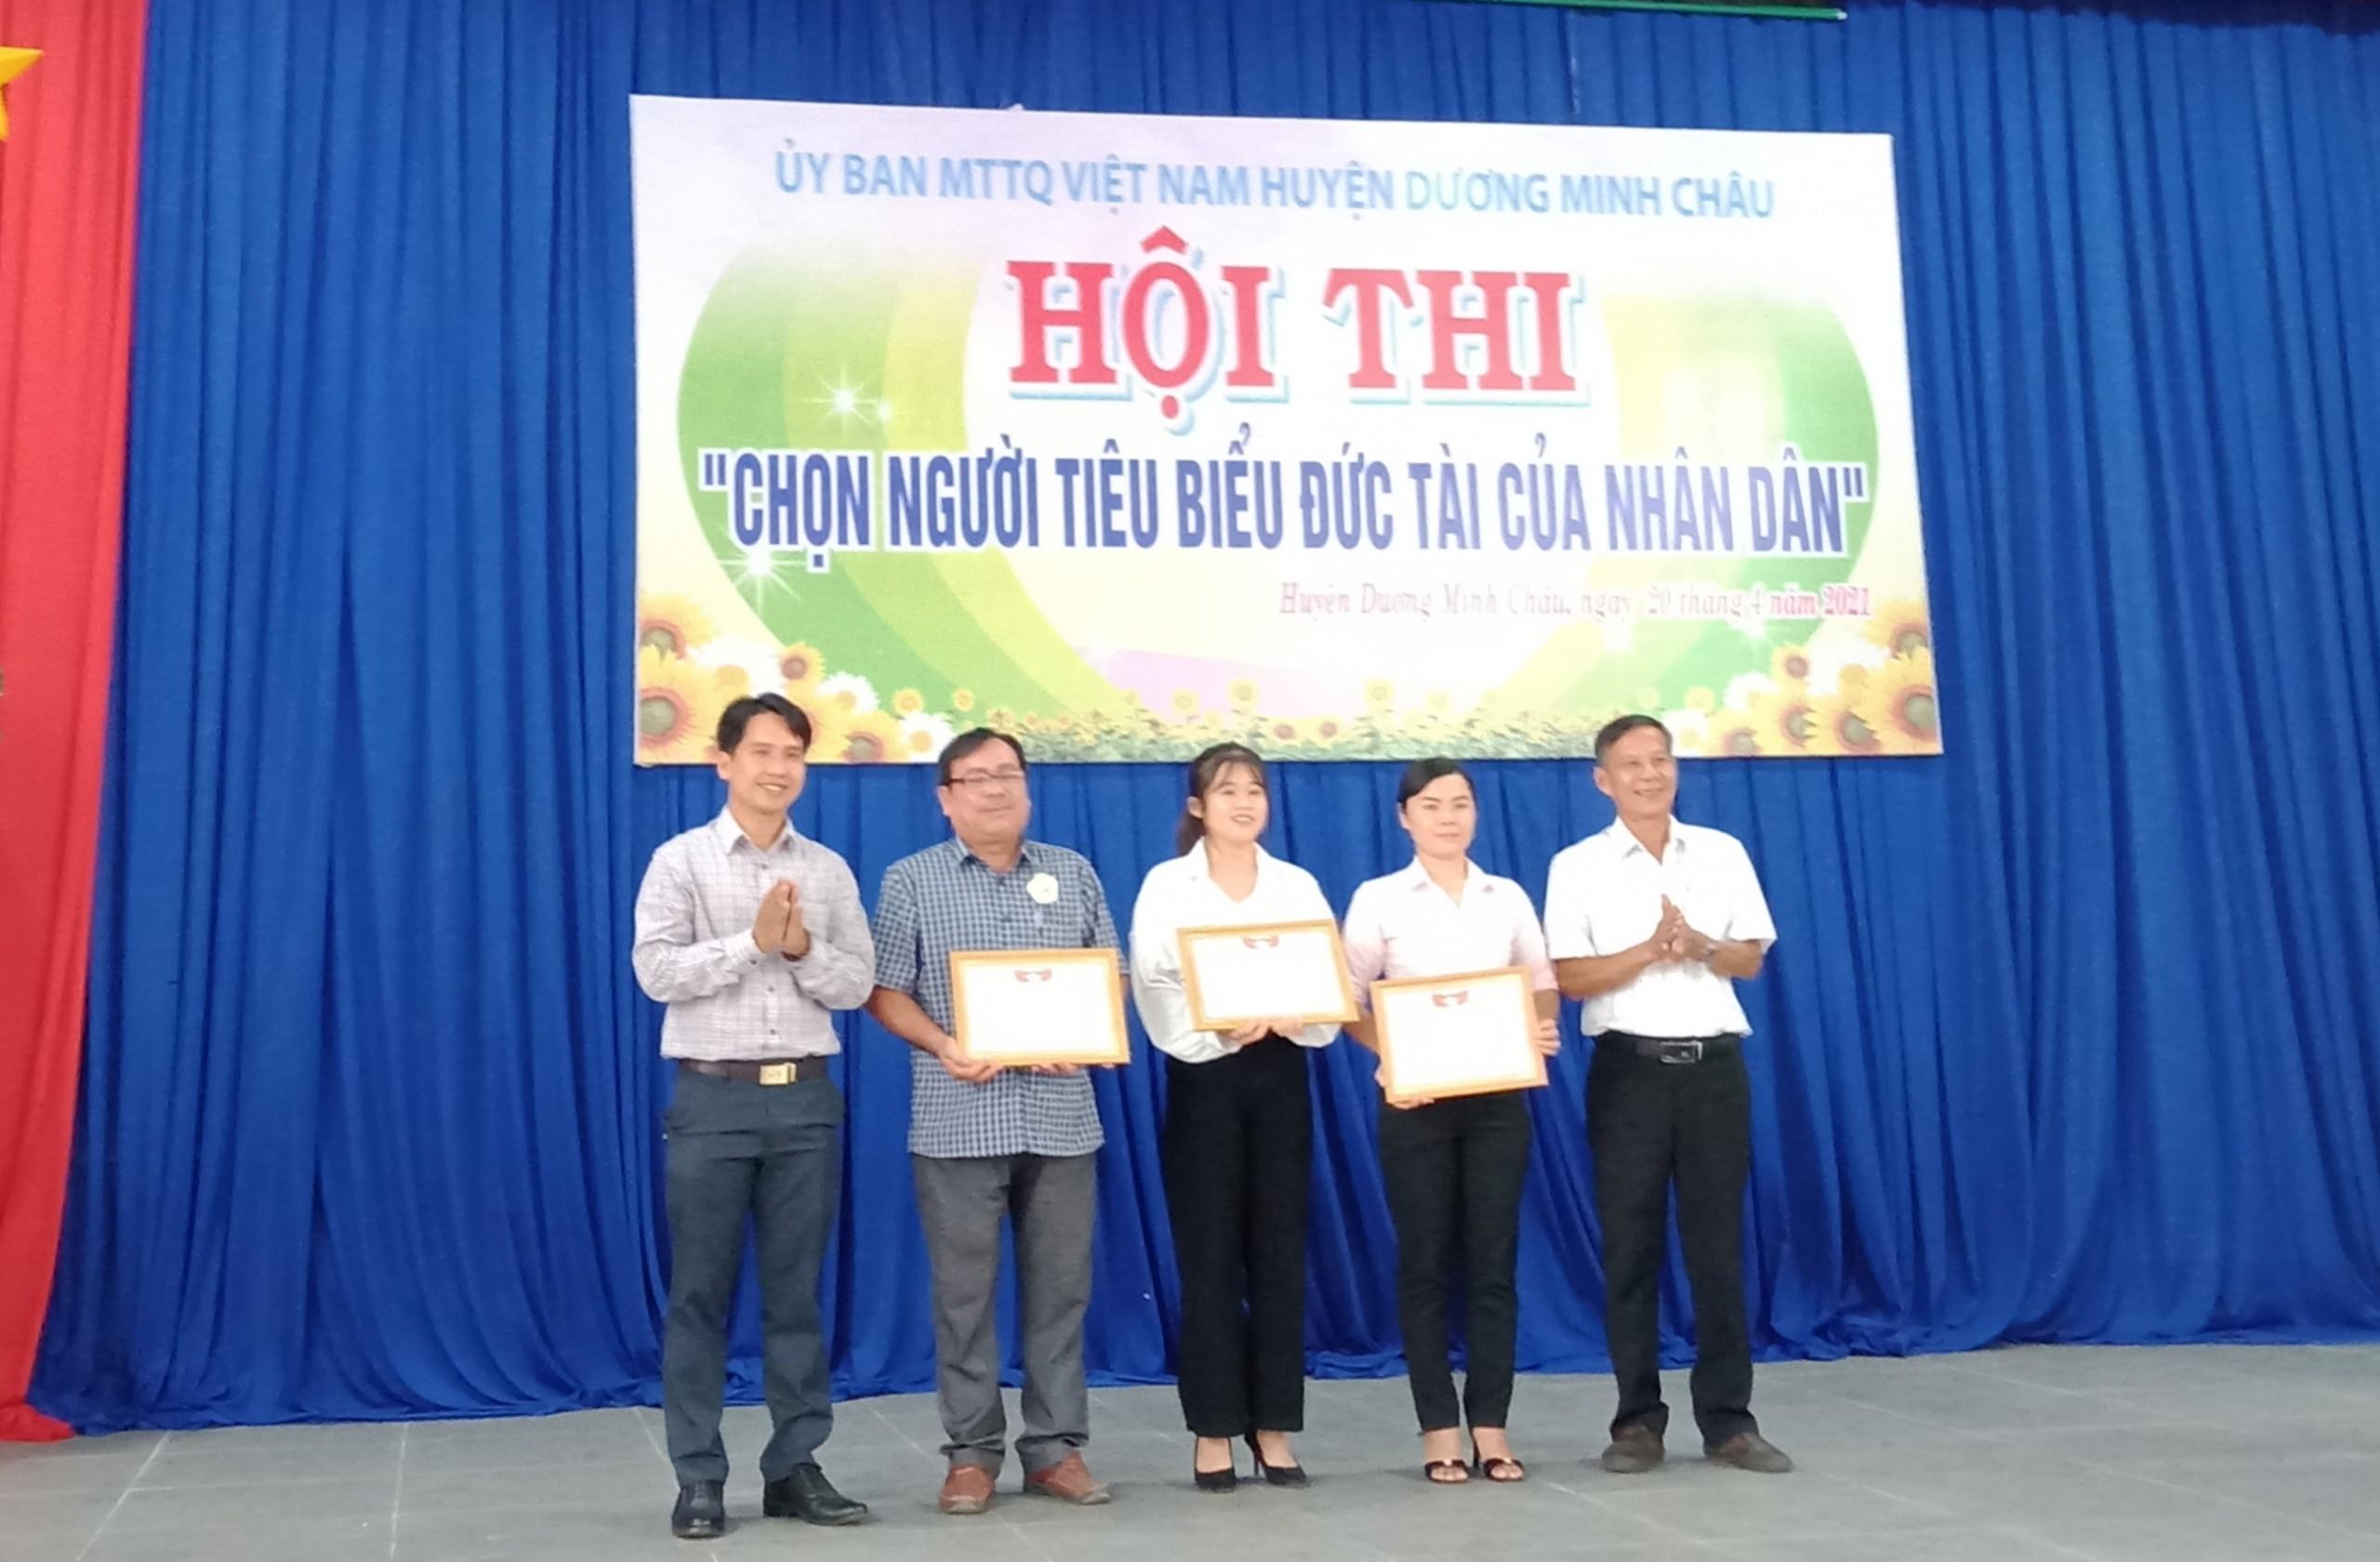 Huyện Dương Minh Châu: Tổ chưc hội thi “Chọn người tiêu biểu đức tài của nhân dân” năm 2021